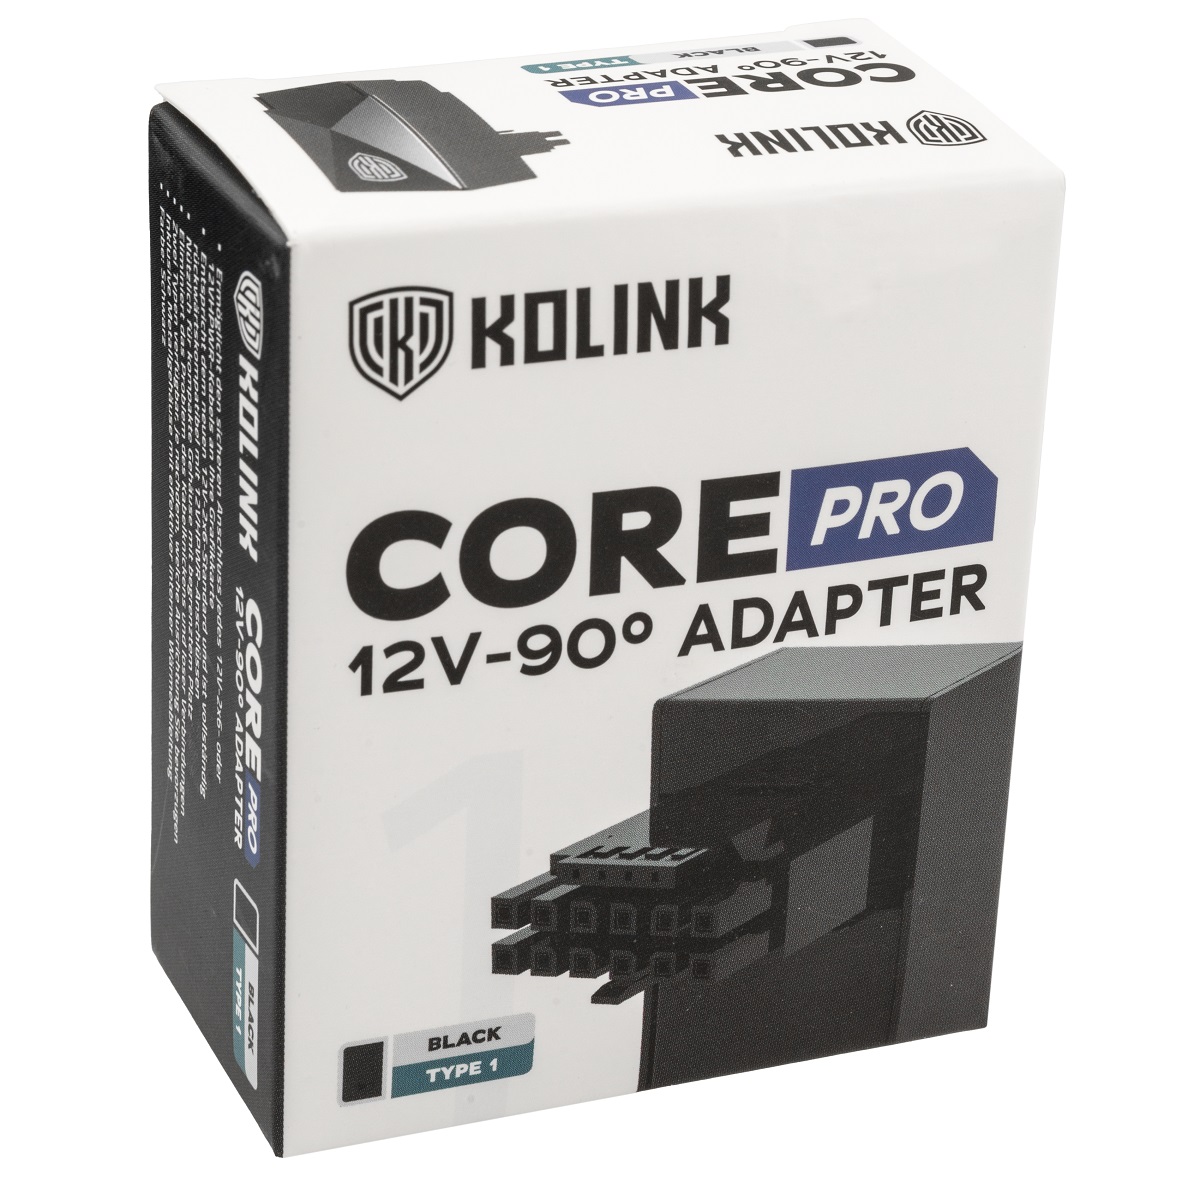 Kolink - Kolink Core Pro 12VHPWR 16-Pin 90 Degree Adapter - Type 1